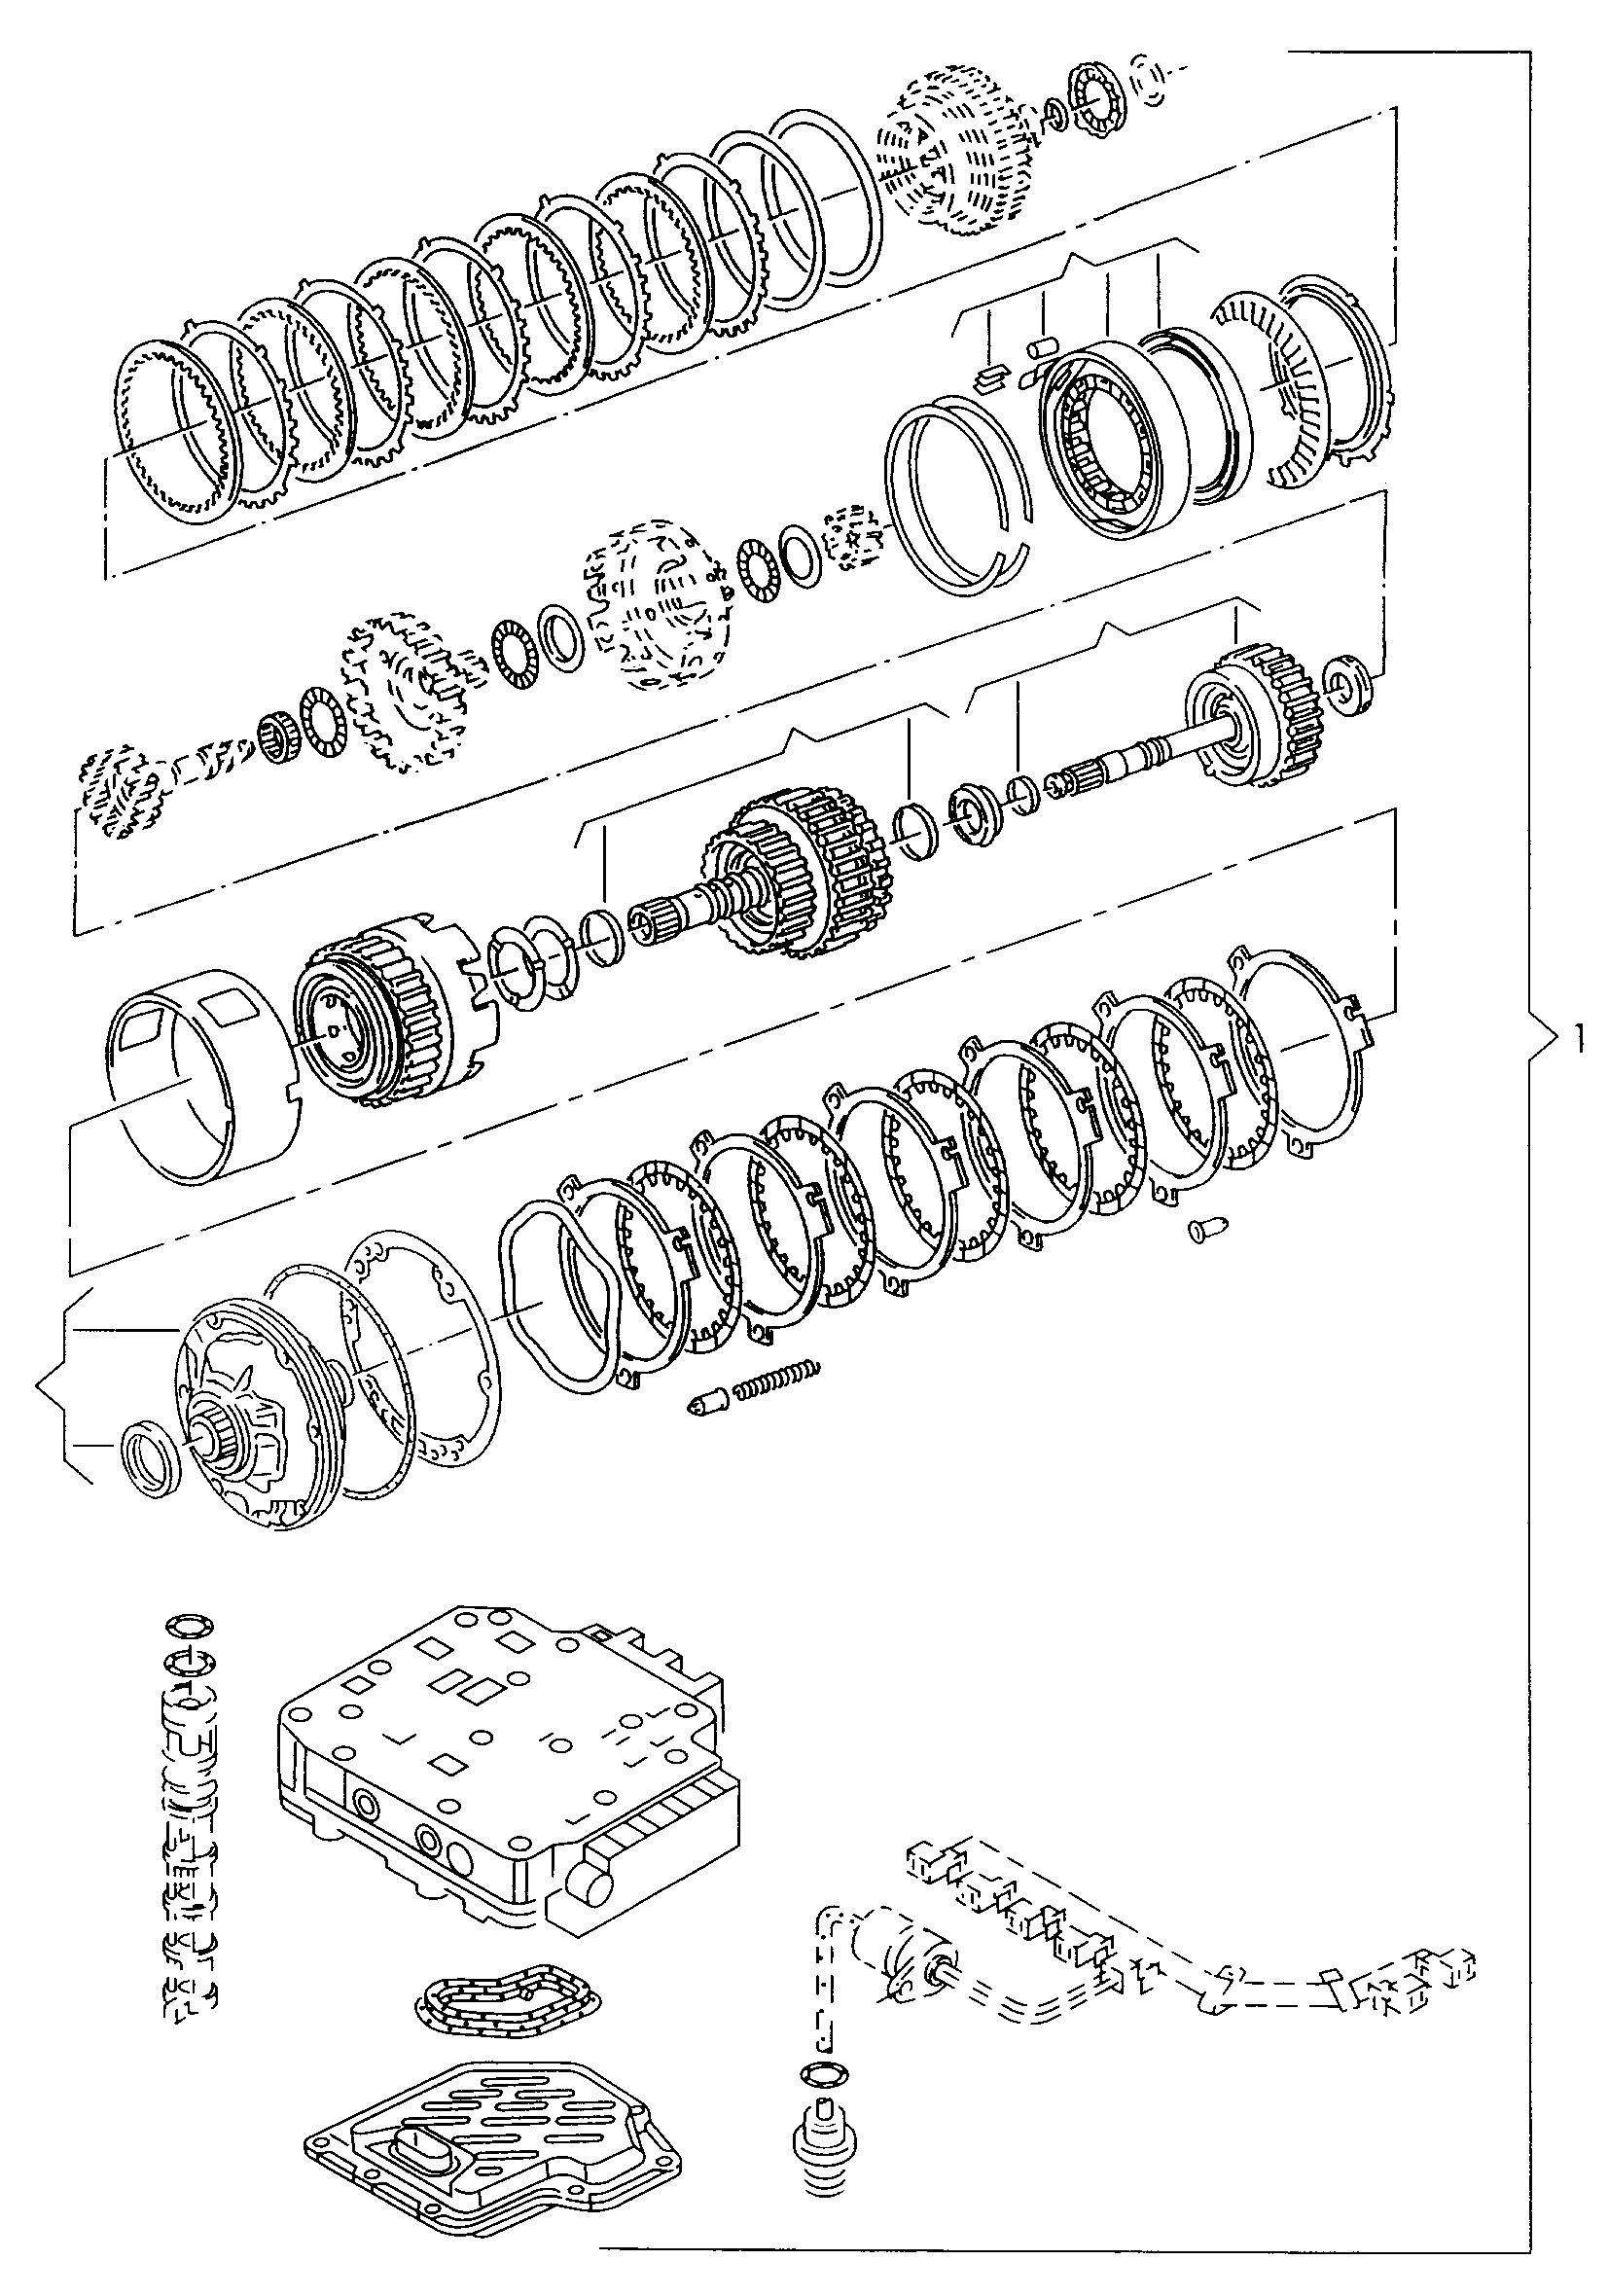 komponenty radicich clenu s
skrinka soupatek; pro... - Alhambra(AL)  